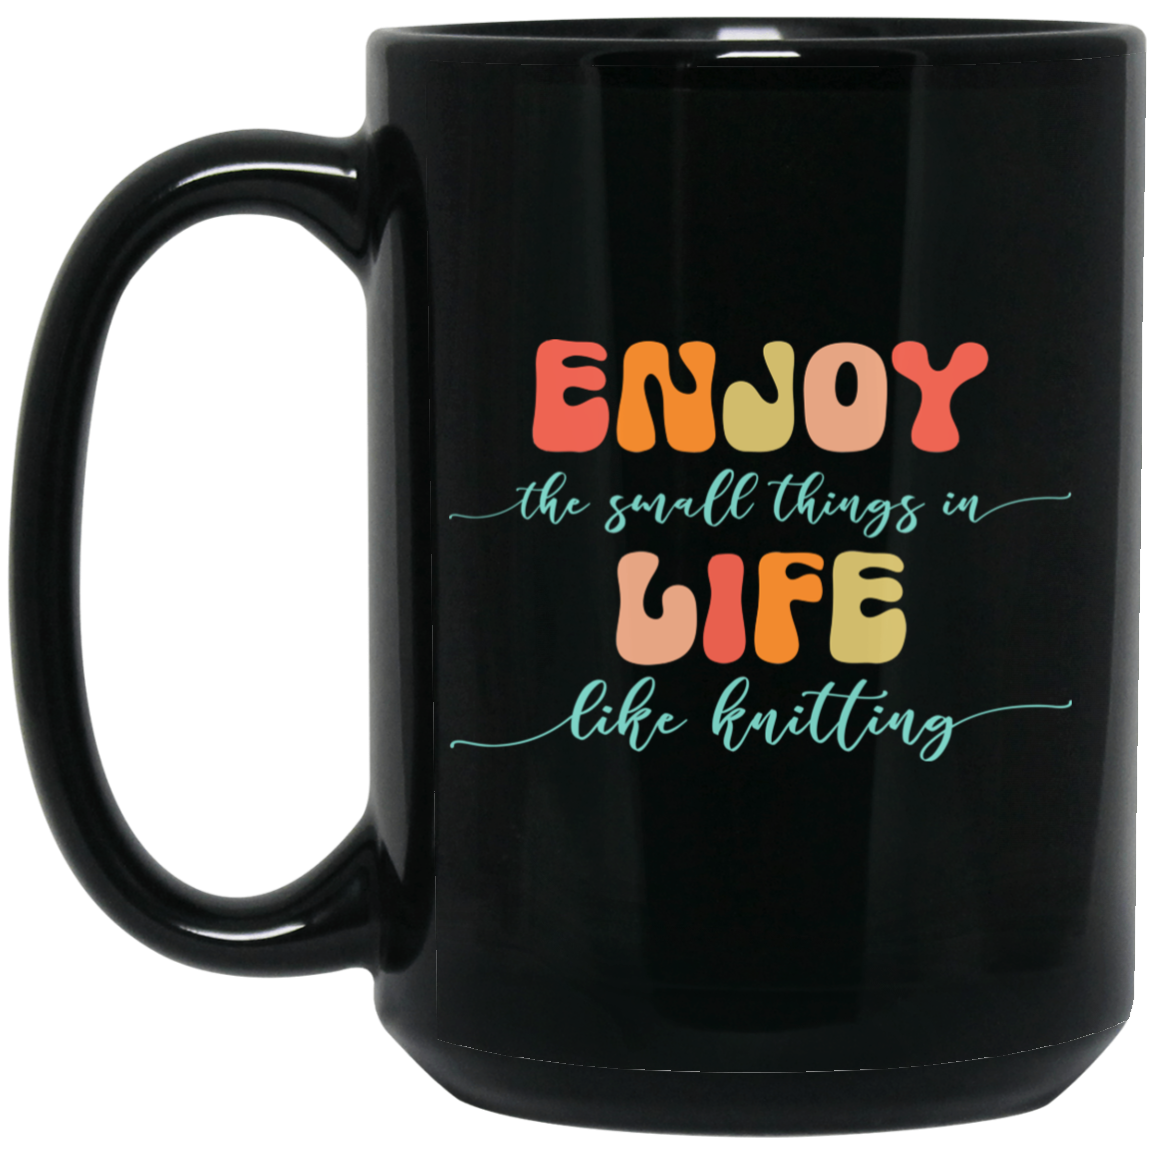 Enjoy Life - Knitting Mugs